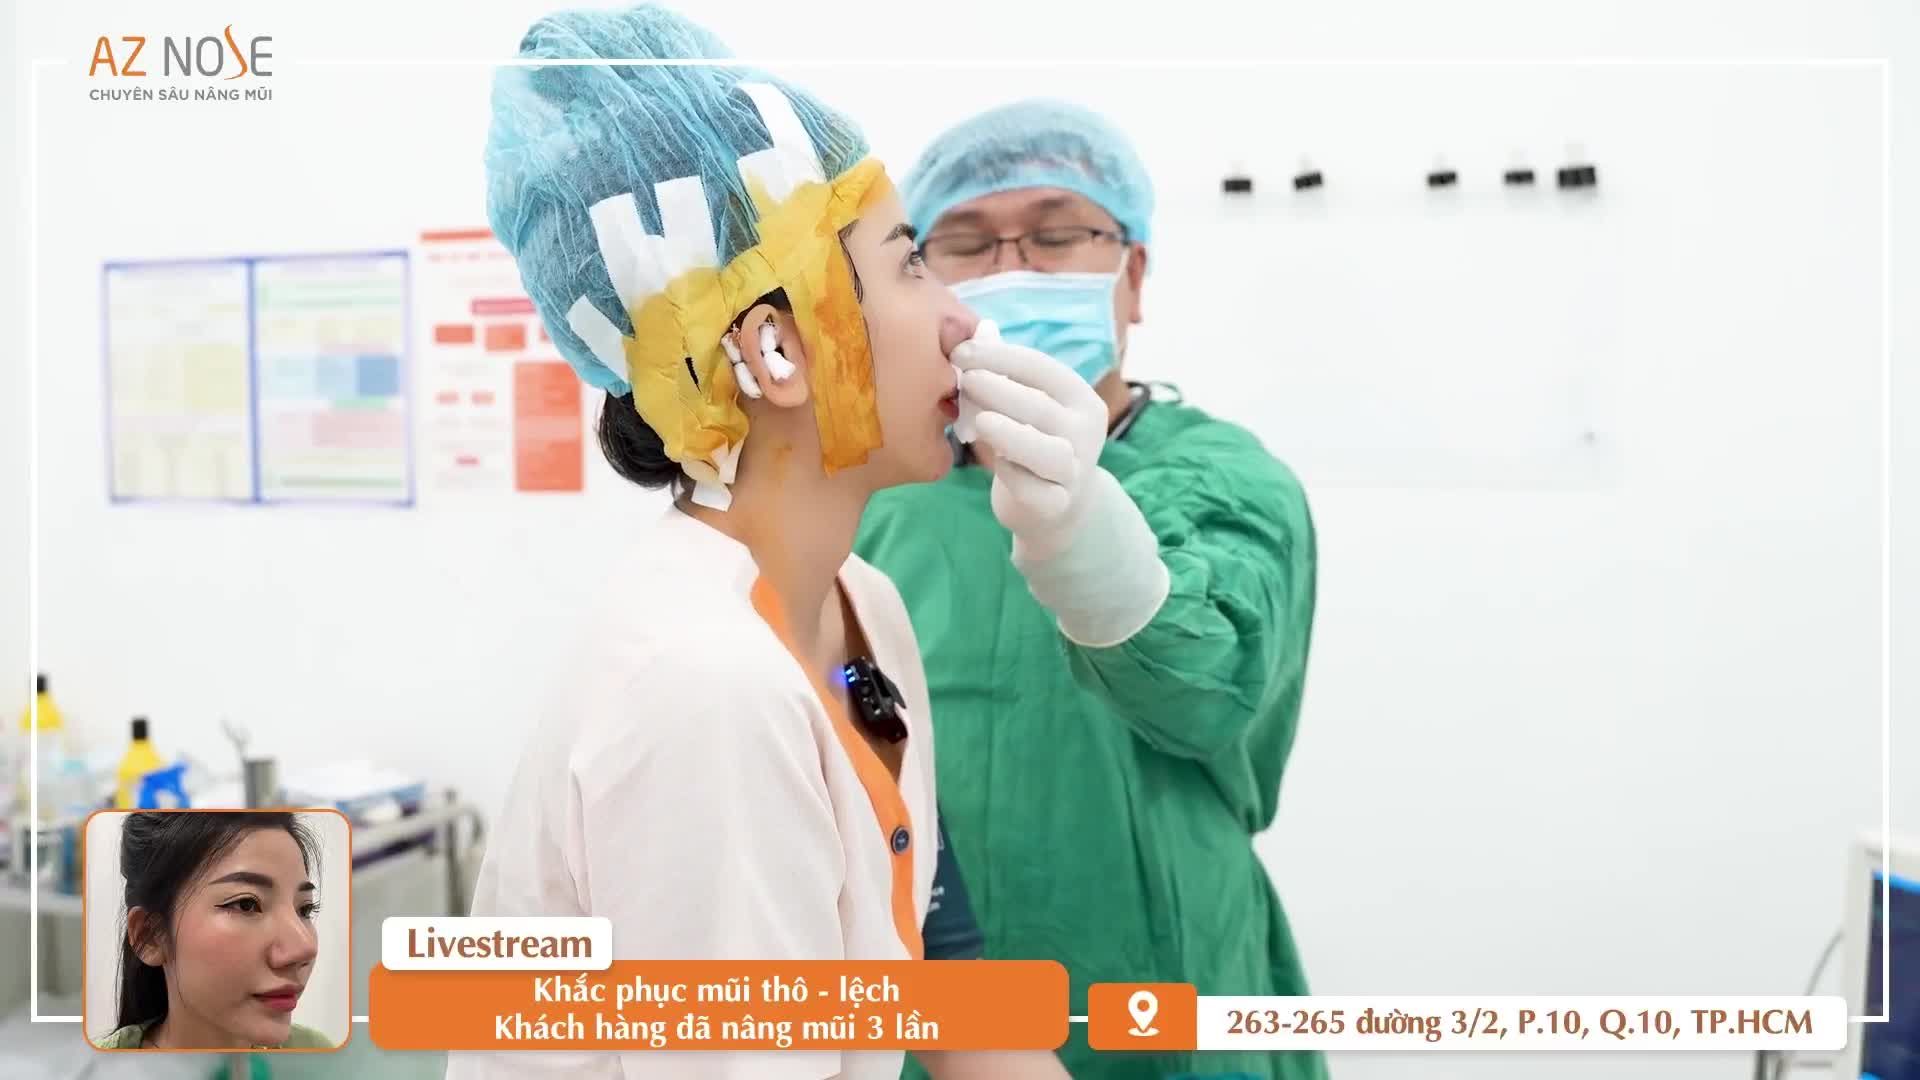 Bác sĩ Hoàng Nam tái tạo mũi h.ỏng cho khách hàng đã 3 lần nâng mũi